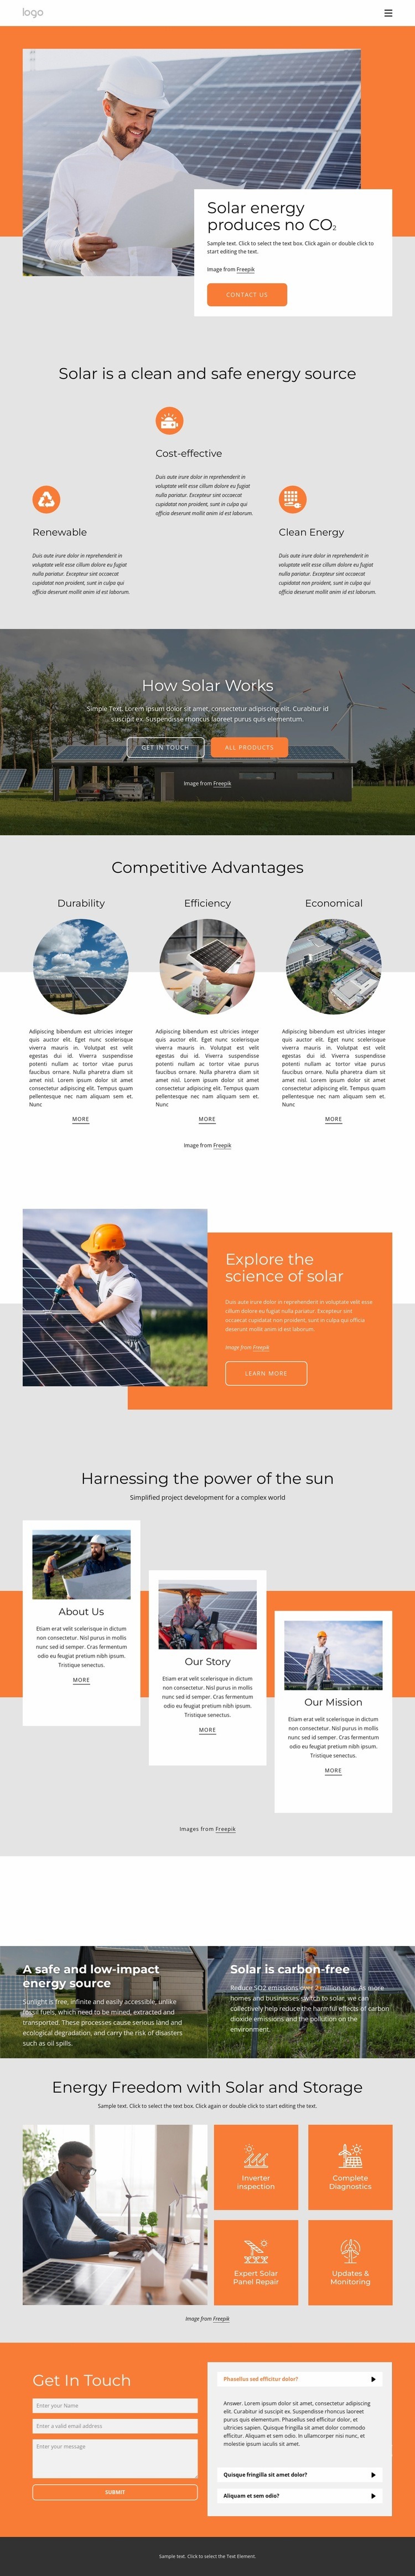 Driv ditt hem med ren solenergi Html webbplatsbyggare